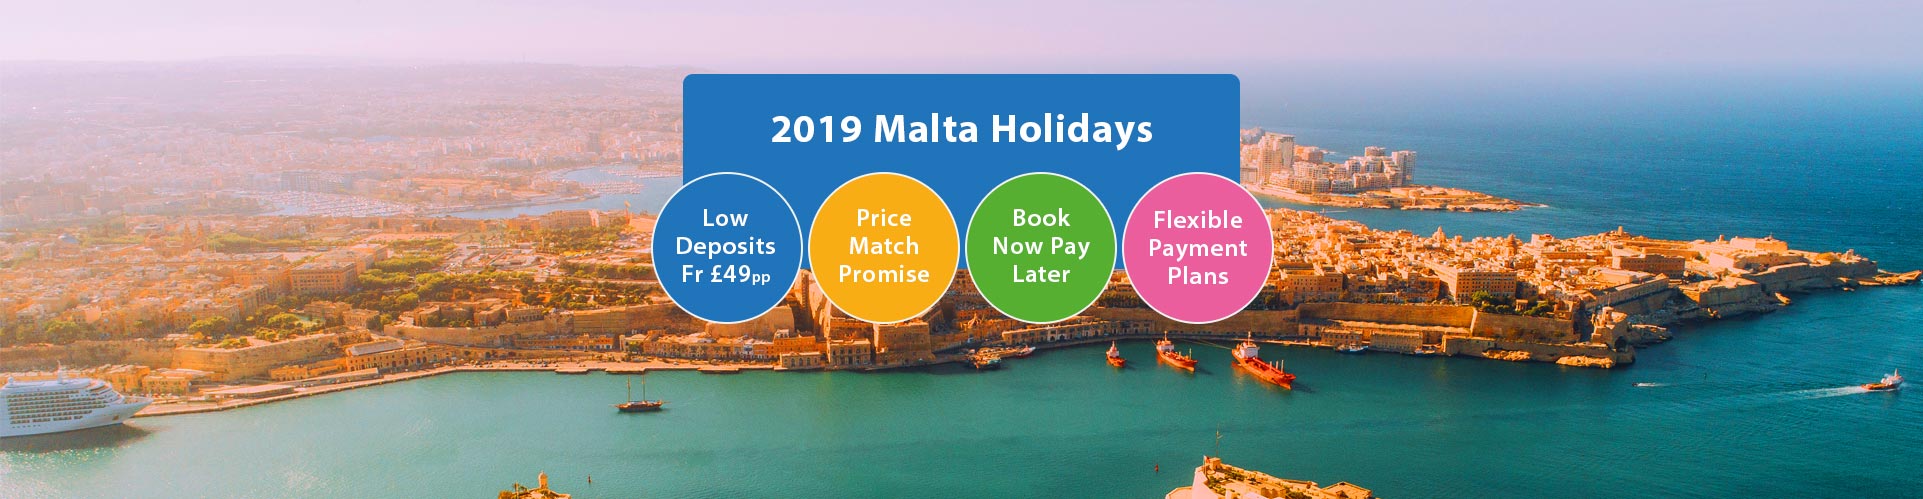 2019 Malta